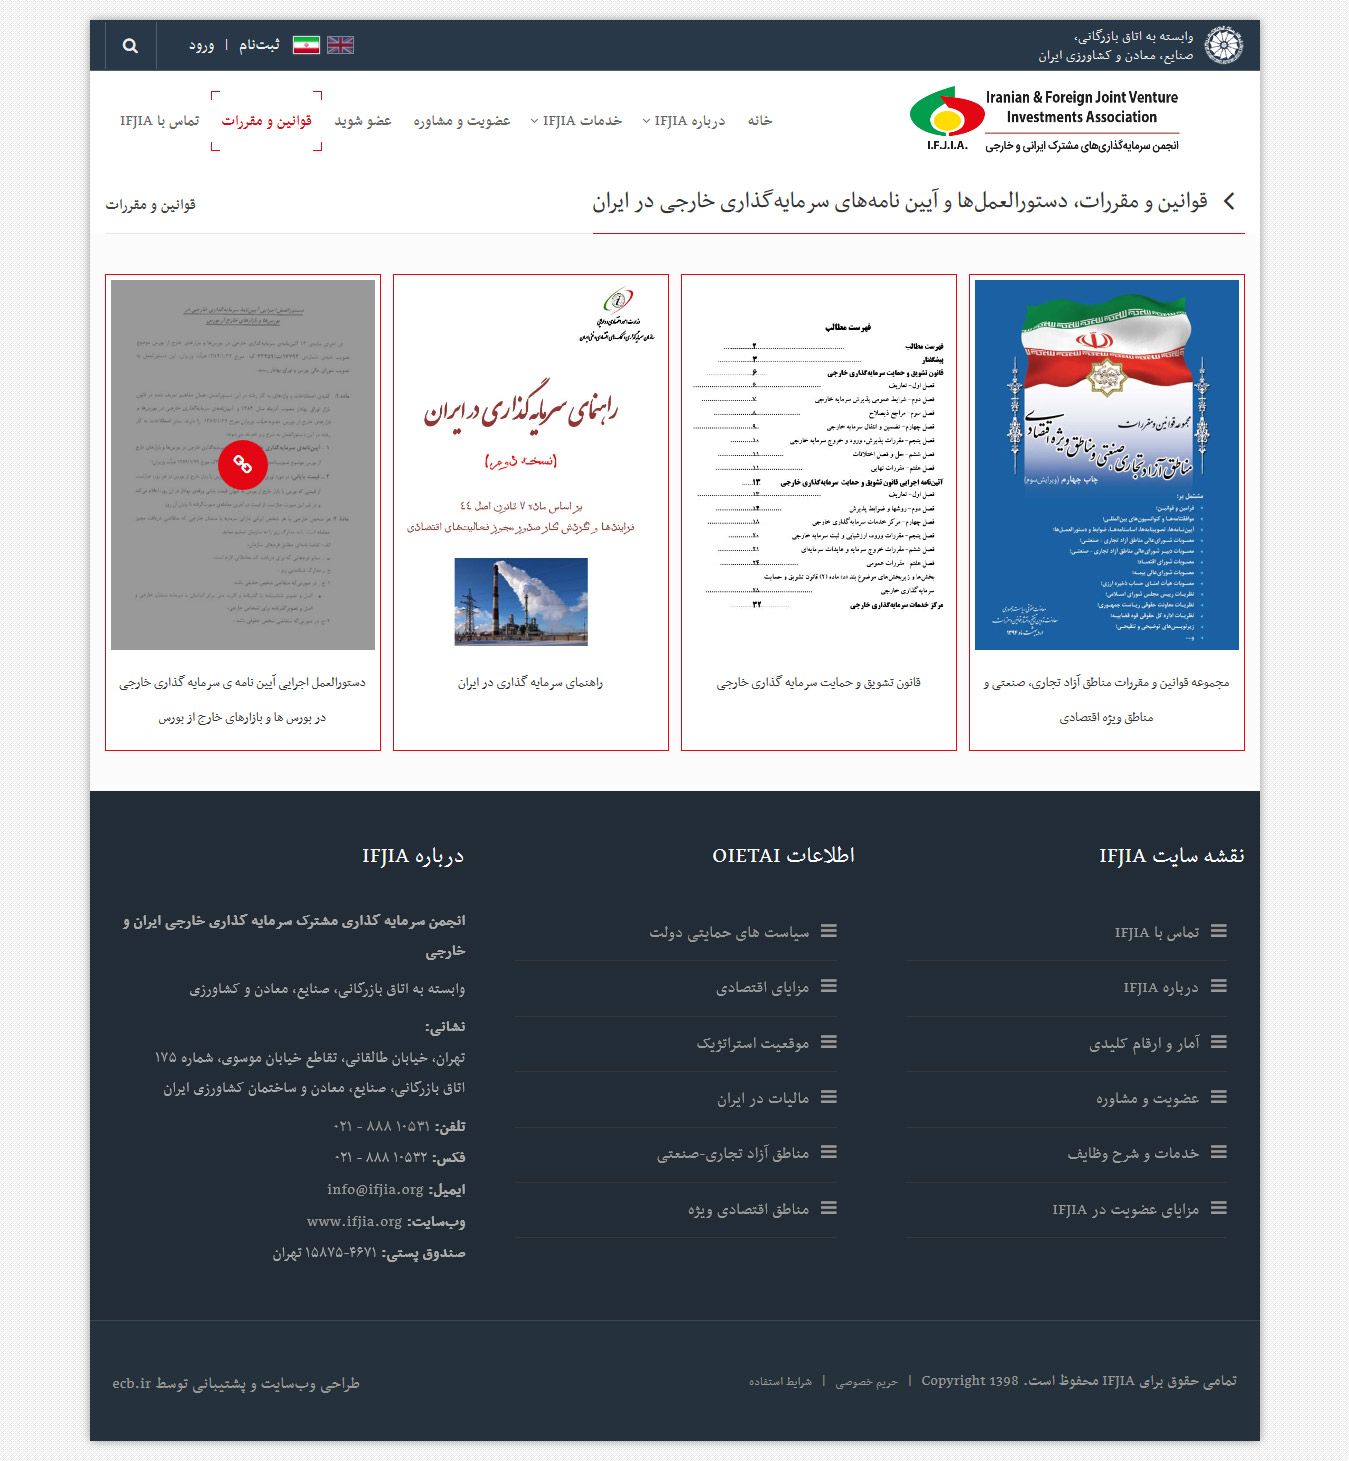 تصویری از صفحه فارسی دانلود اسناد مورد نیاز در سایت انجمن سرمایه‌گذاری‌های مشترک ایرانی و خارجی